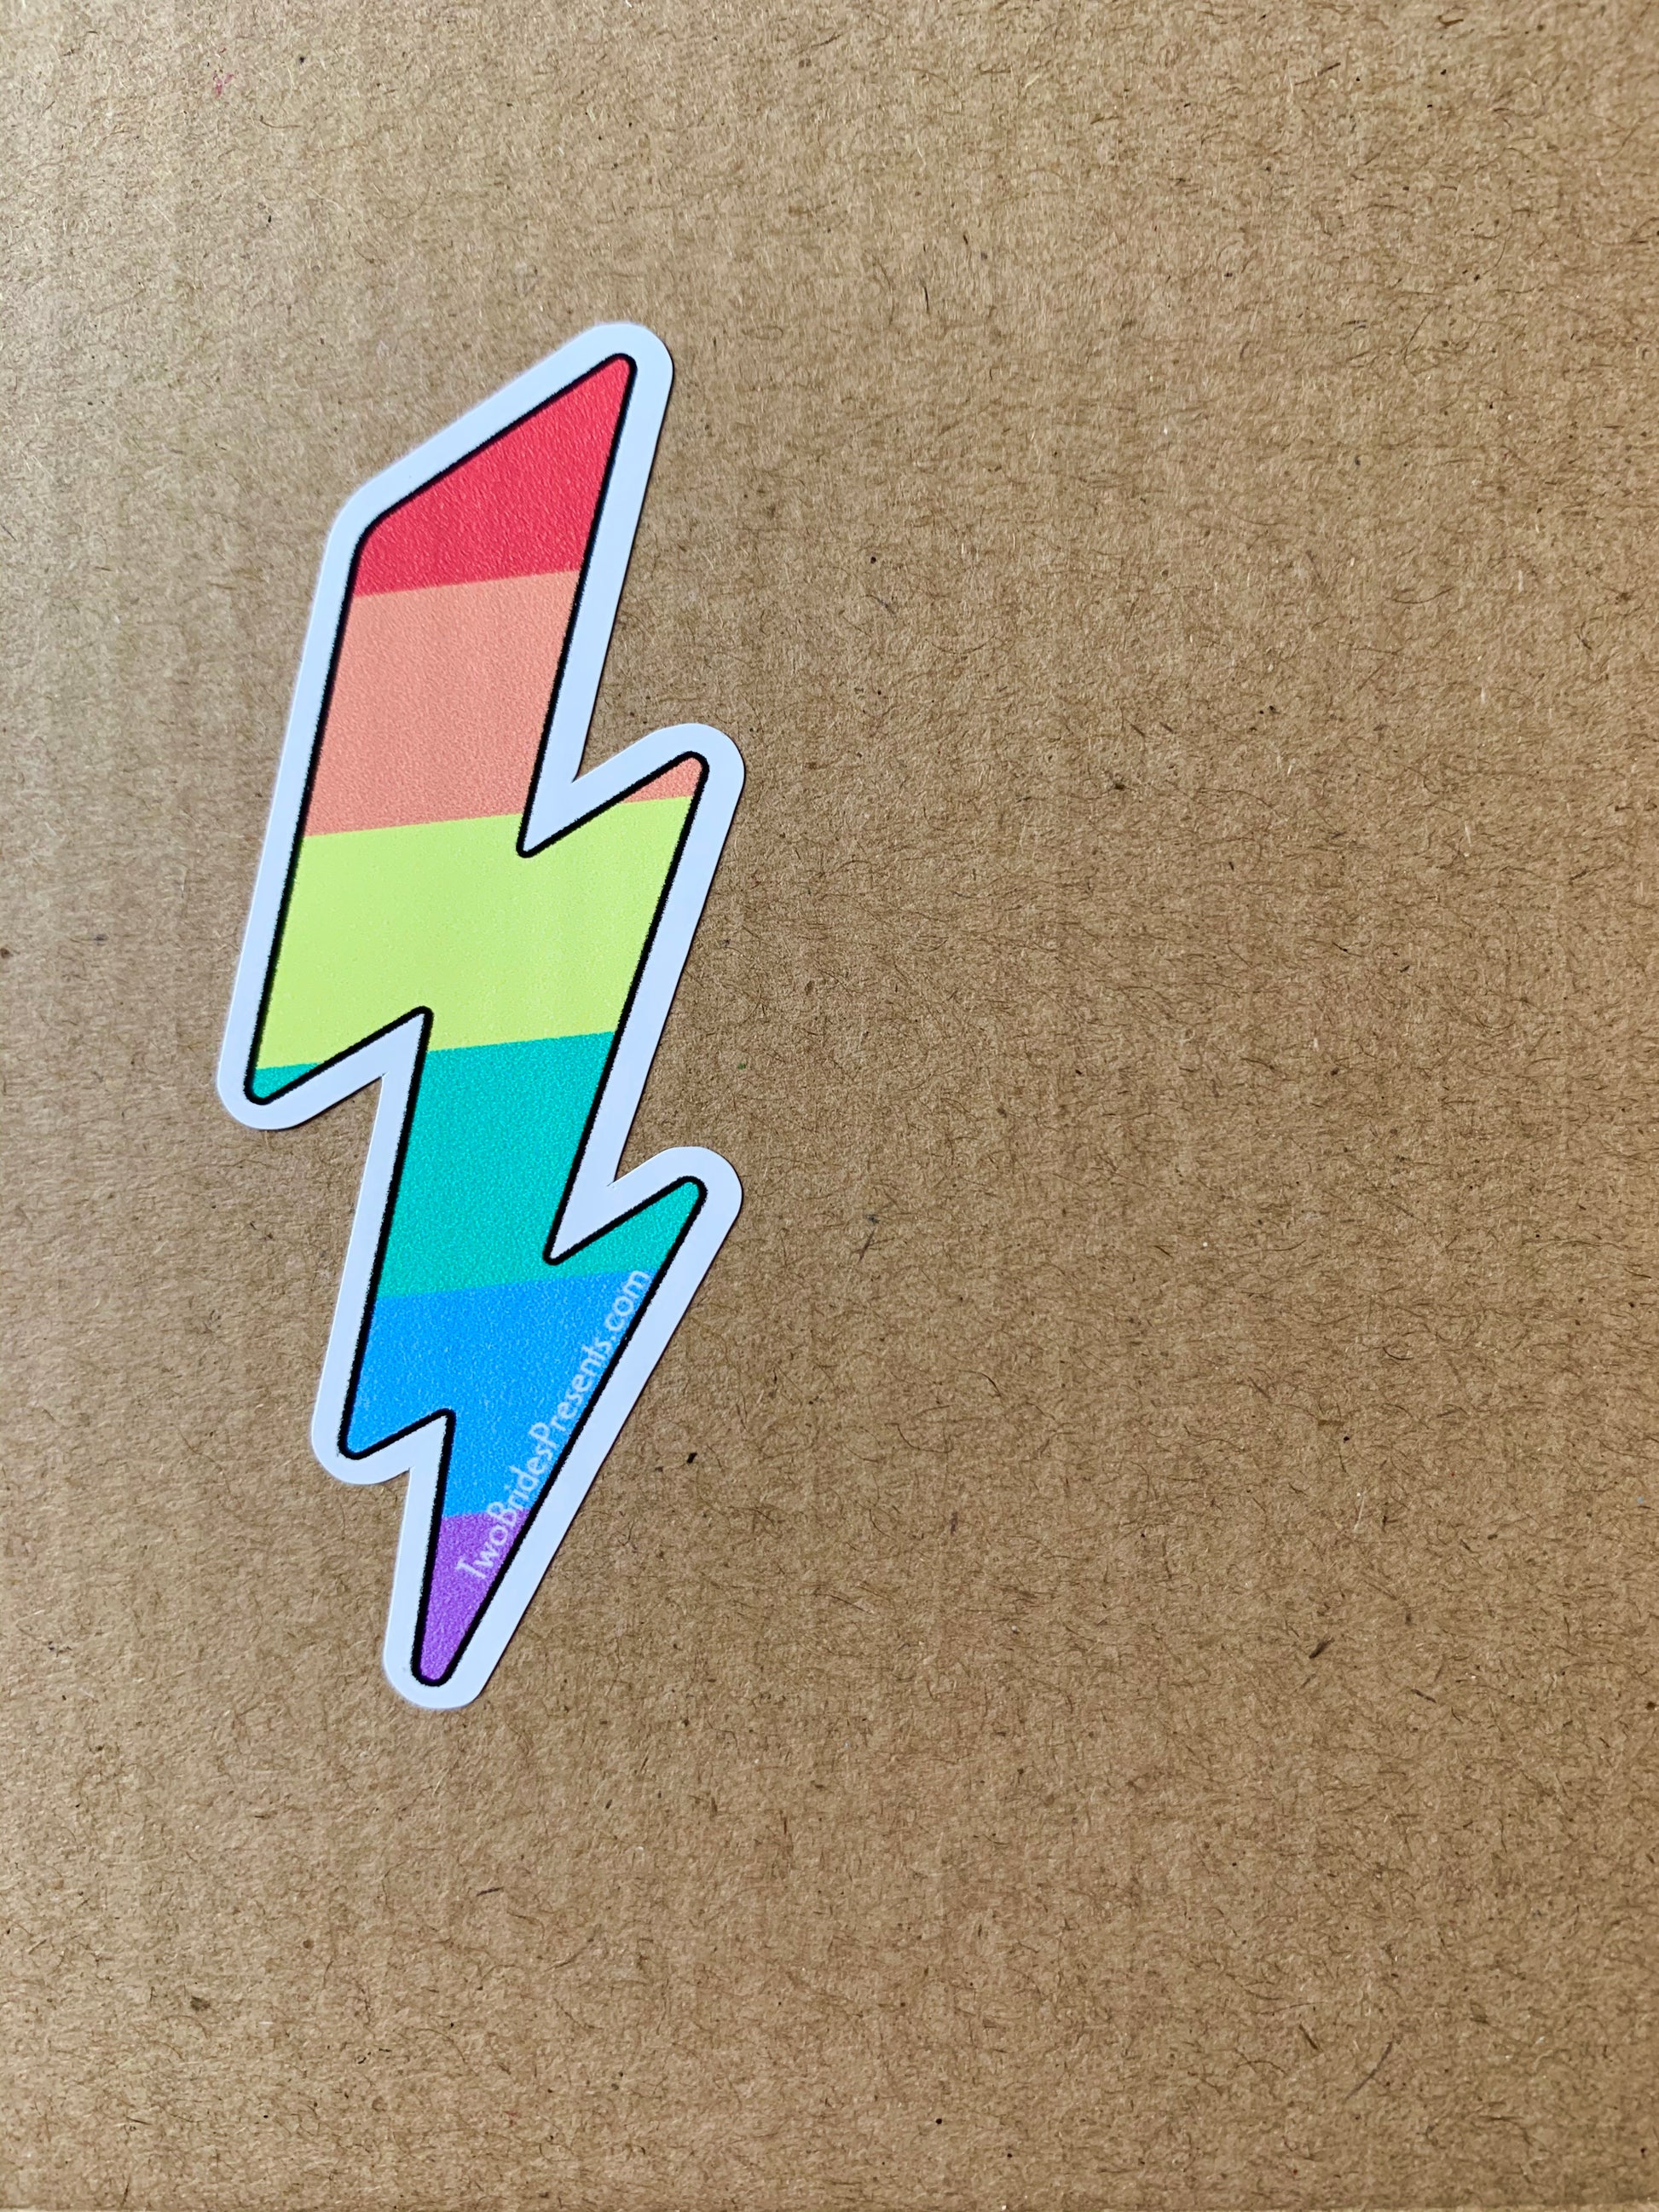 Rainbow Lightning Sticker